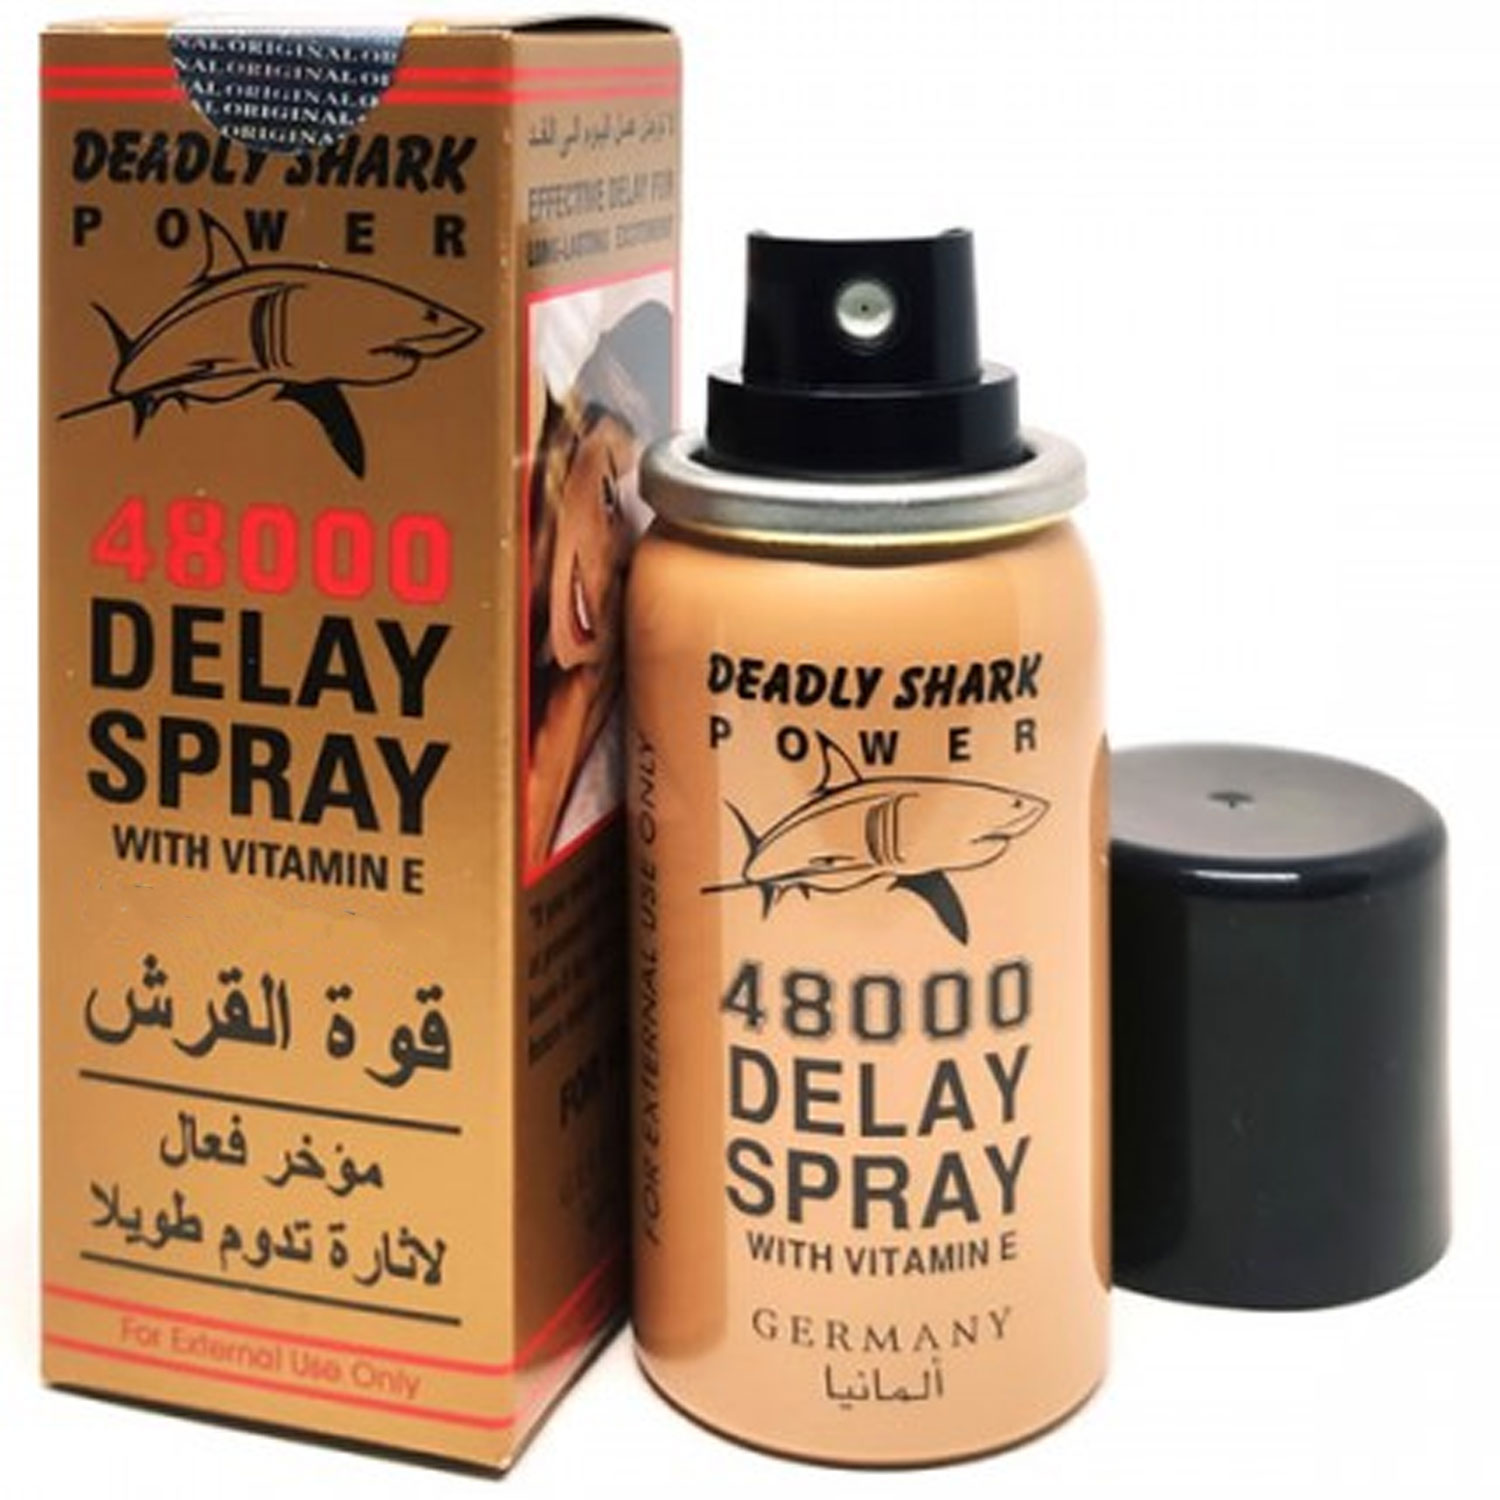 Deadly Shark Power 48000 Delay Spray With Vitamin E Germany